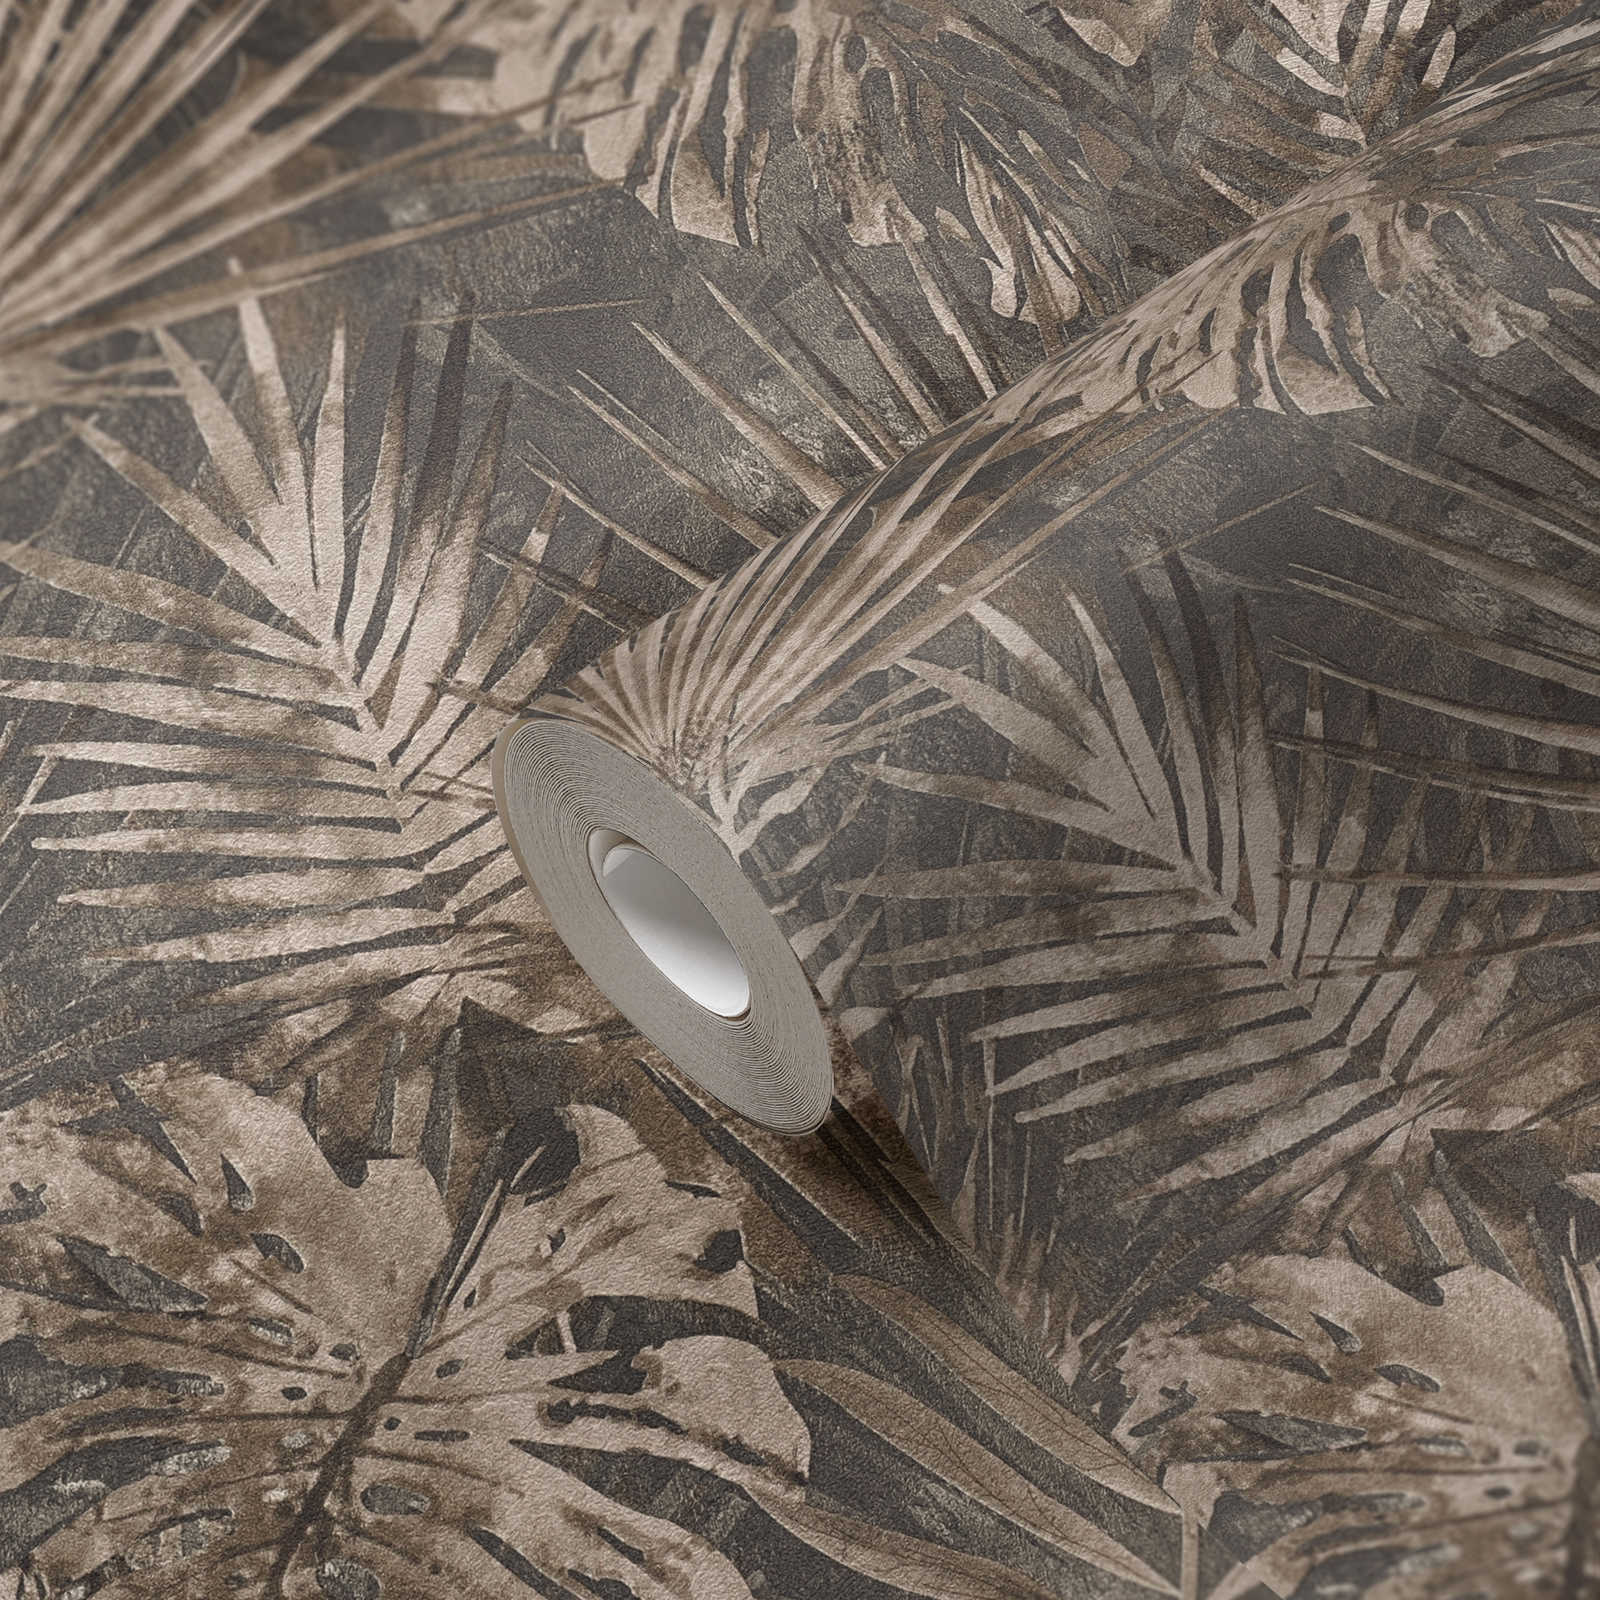             Papier peint jungle avec motif de feuilles tropicales sans PVC - marron, beige, anthracite
        